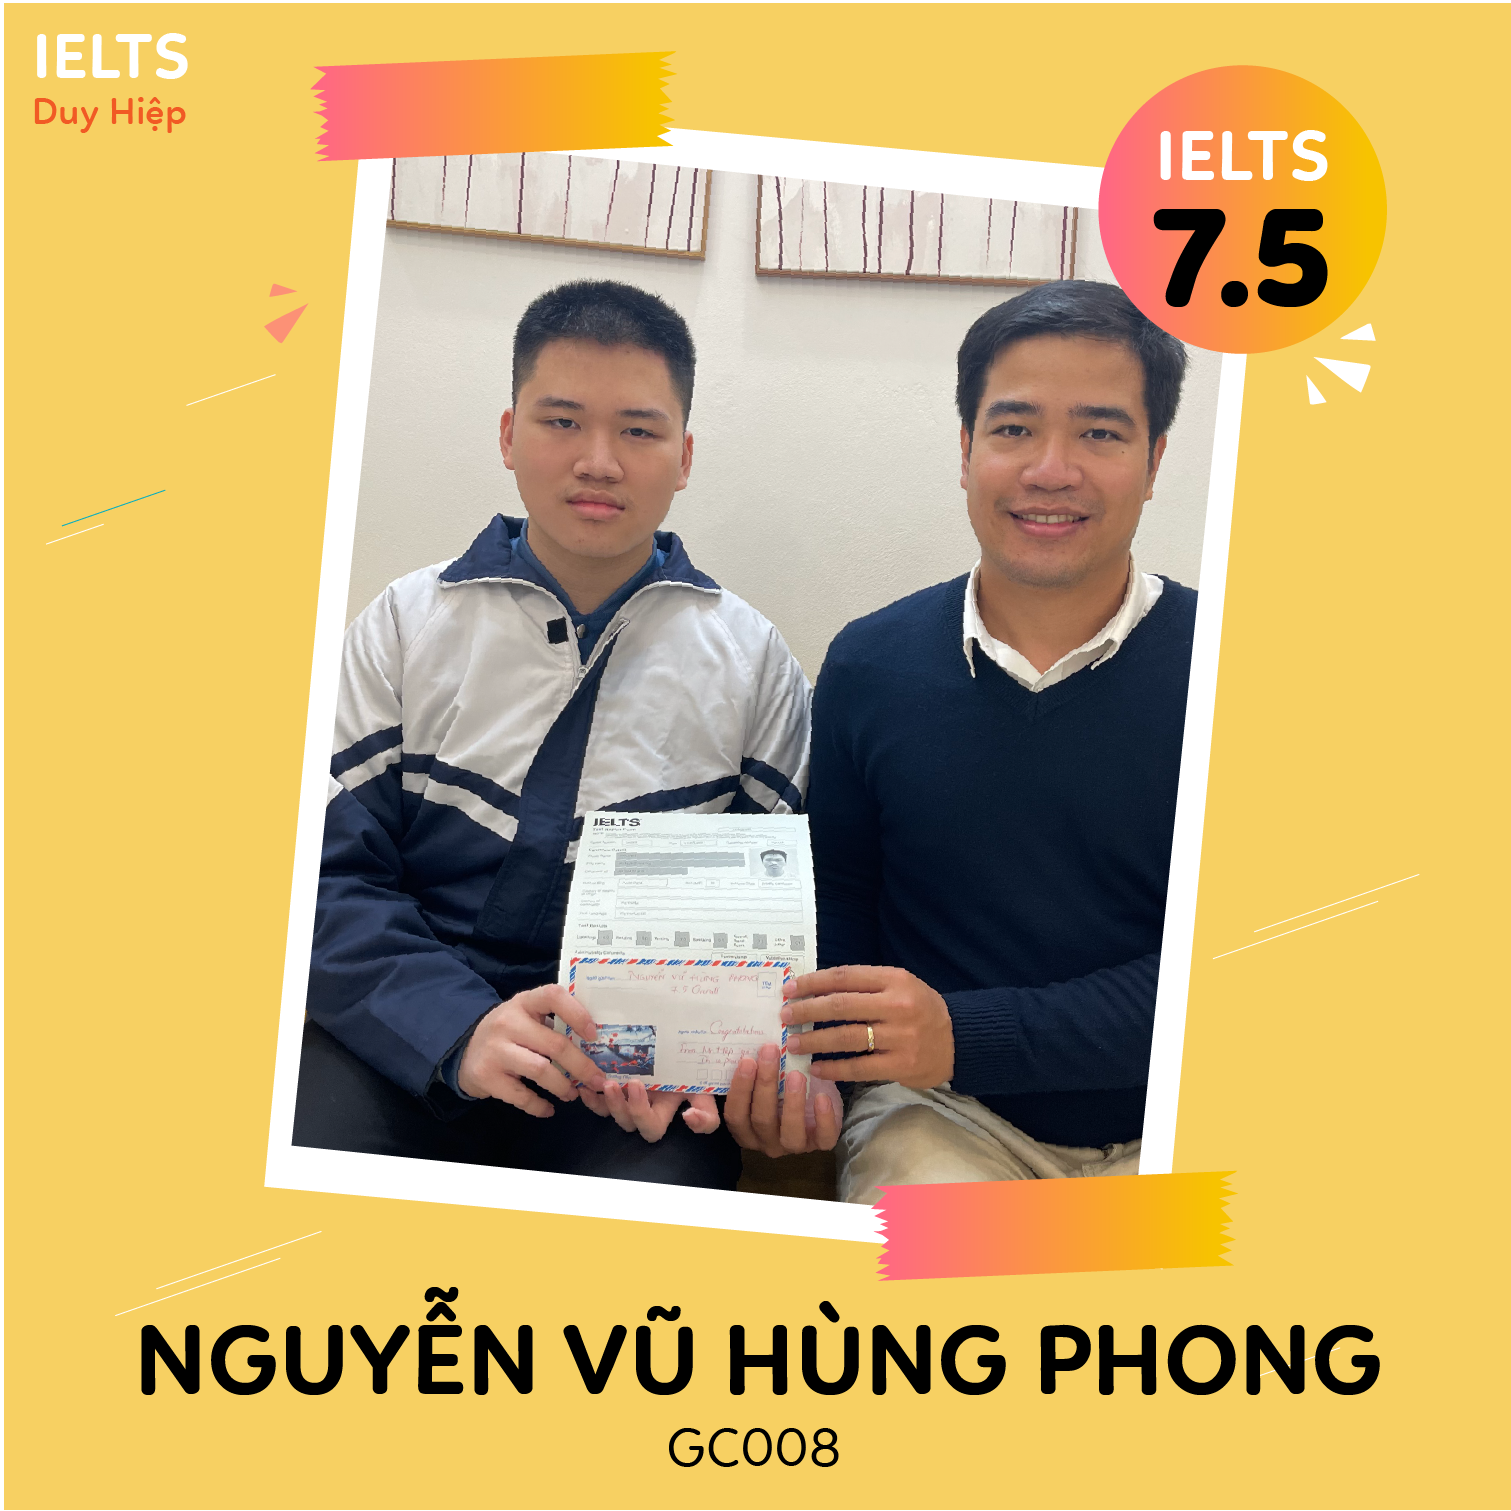 WALL OF FAME - Nguyễn Vũ Hùng Phong 7.5 IELTS